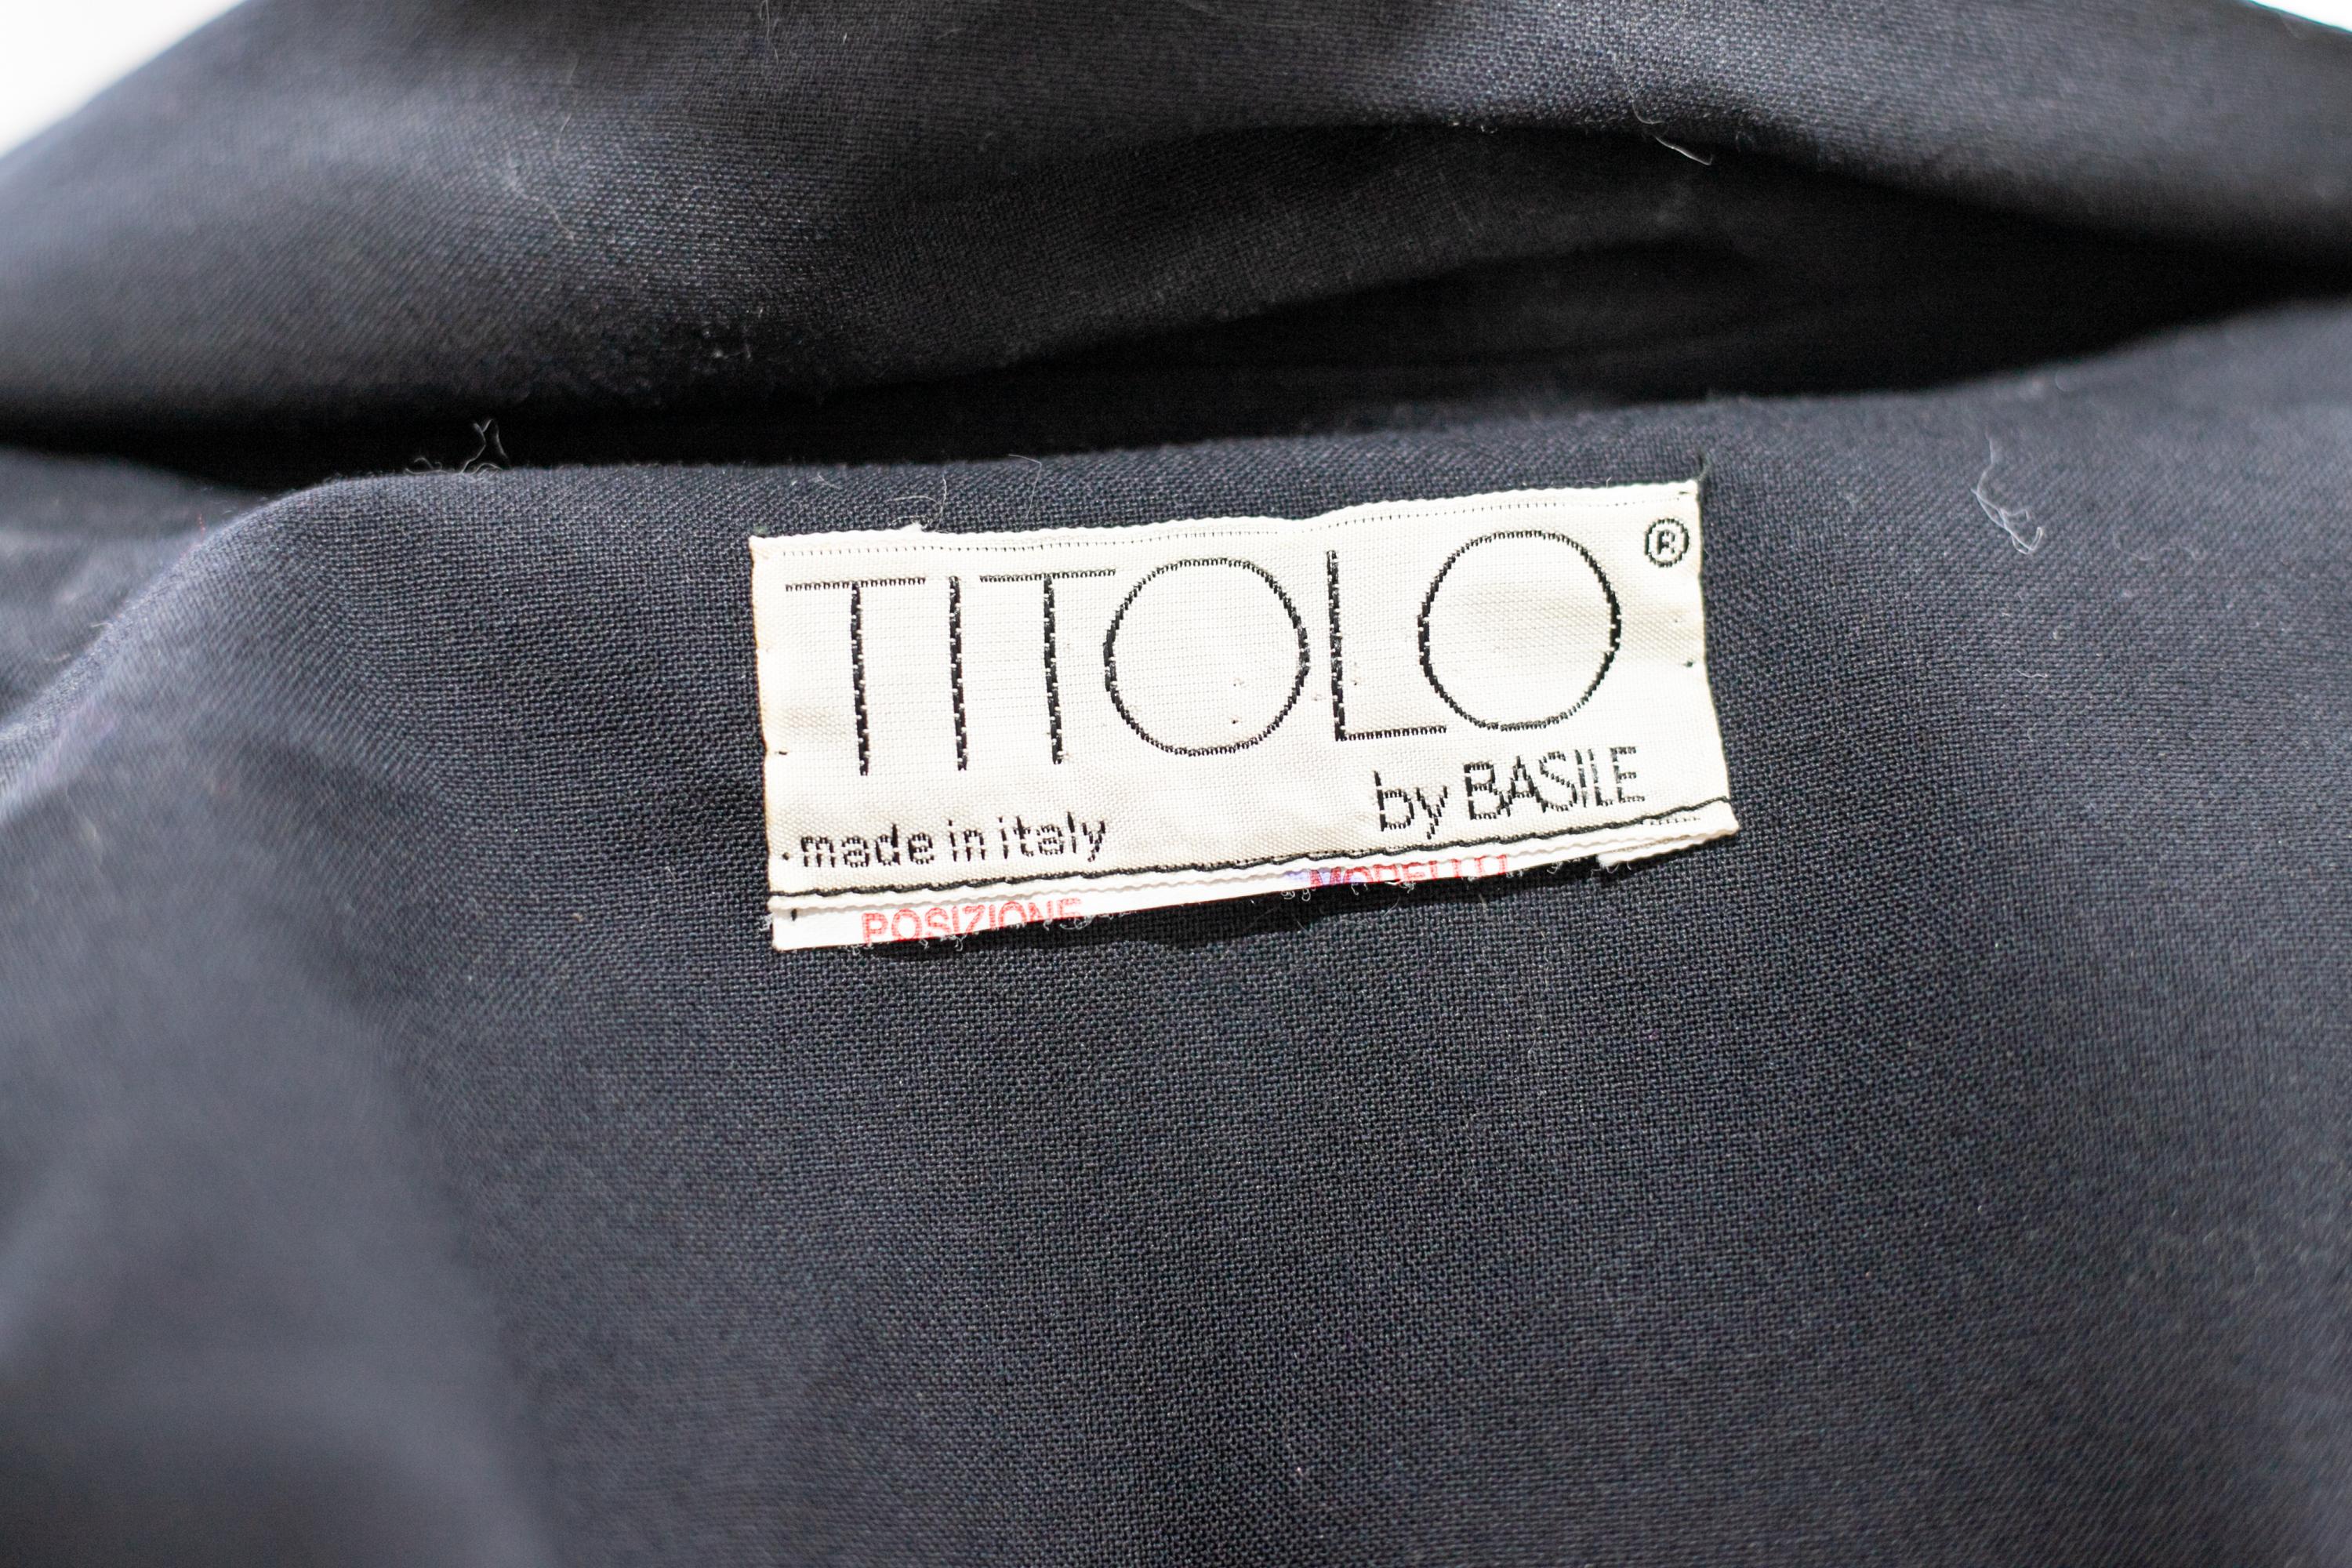 Schöner Vintage-Trenchcoat, entworfen von Titolo für Basile in den 1990er Jahren, hergestellt in Italien.
ORIGINALETIKETT.
Der Blazer ist ganz aus schwarzer Baumwolle mit langen, aber weichen Ärmeln.
Der Kragen hat einen klassischen